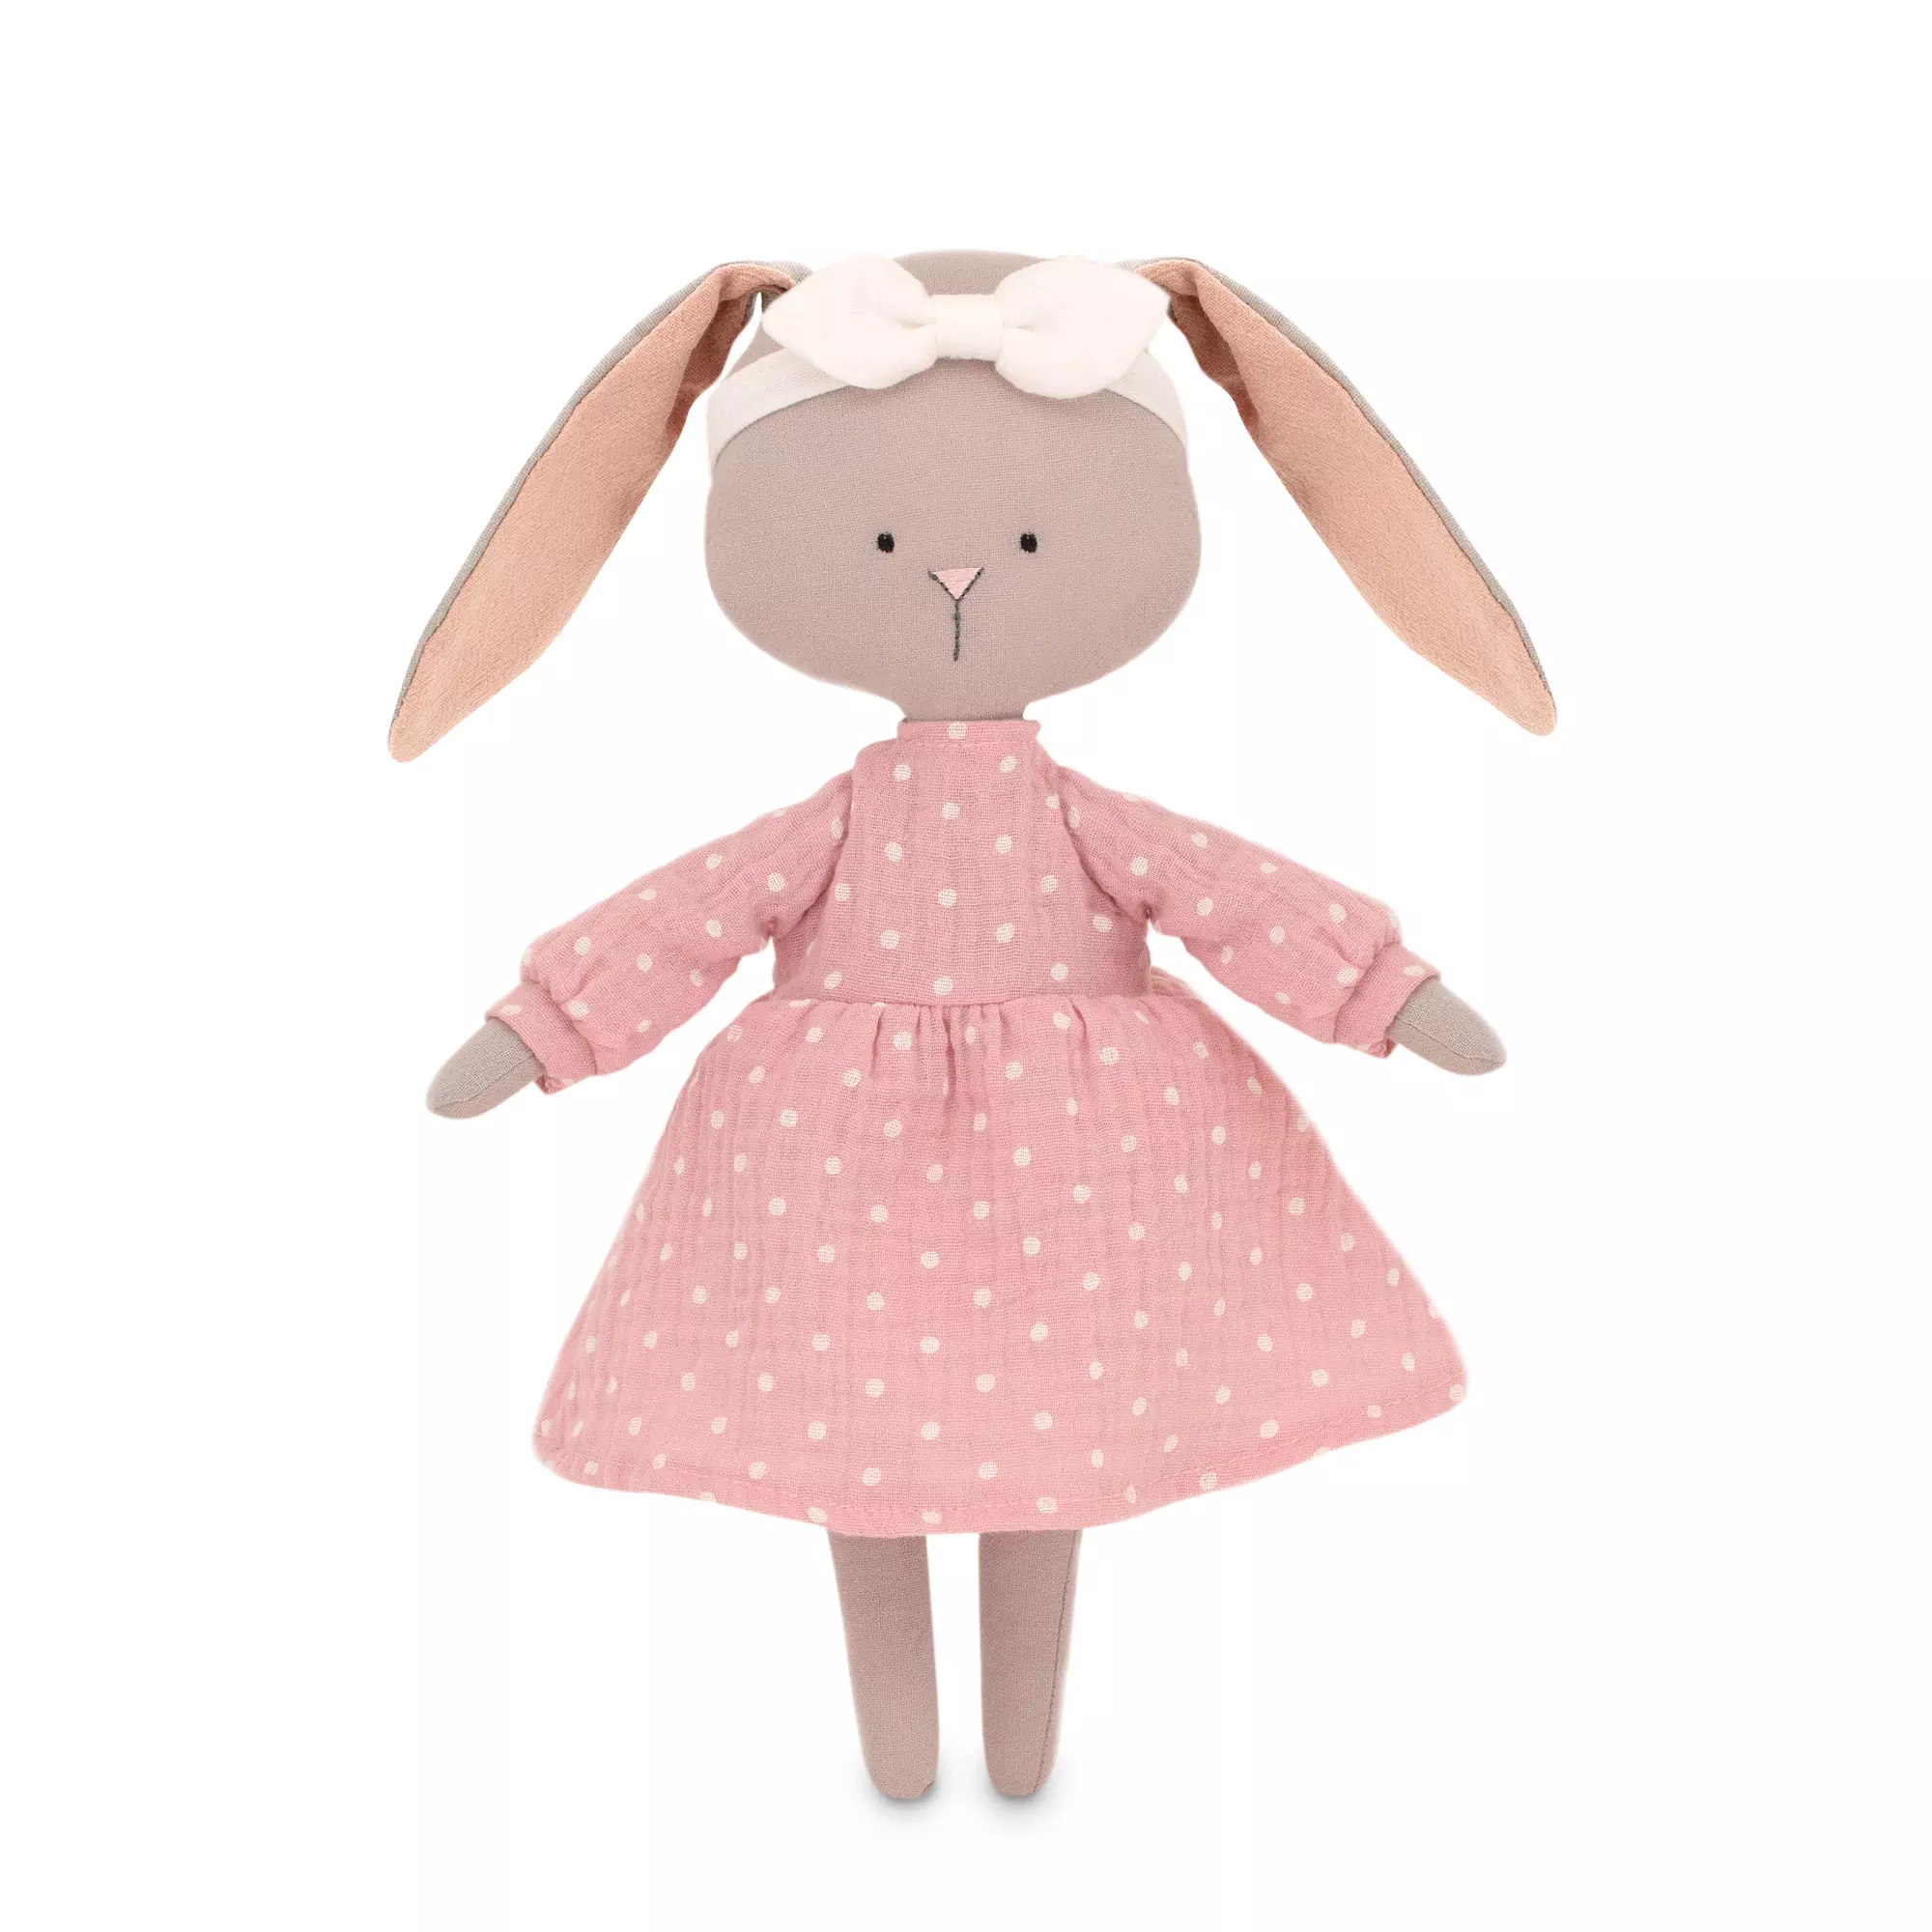 Мягкая игрушка Зайка Люси в розовом платье 30 см